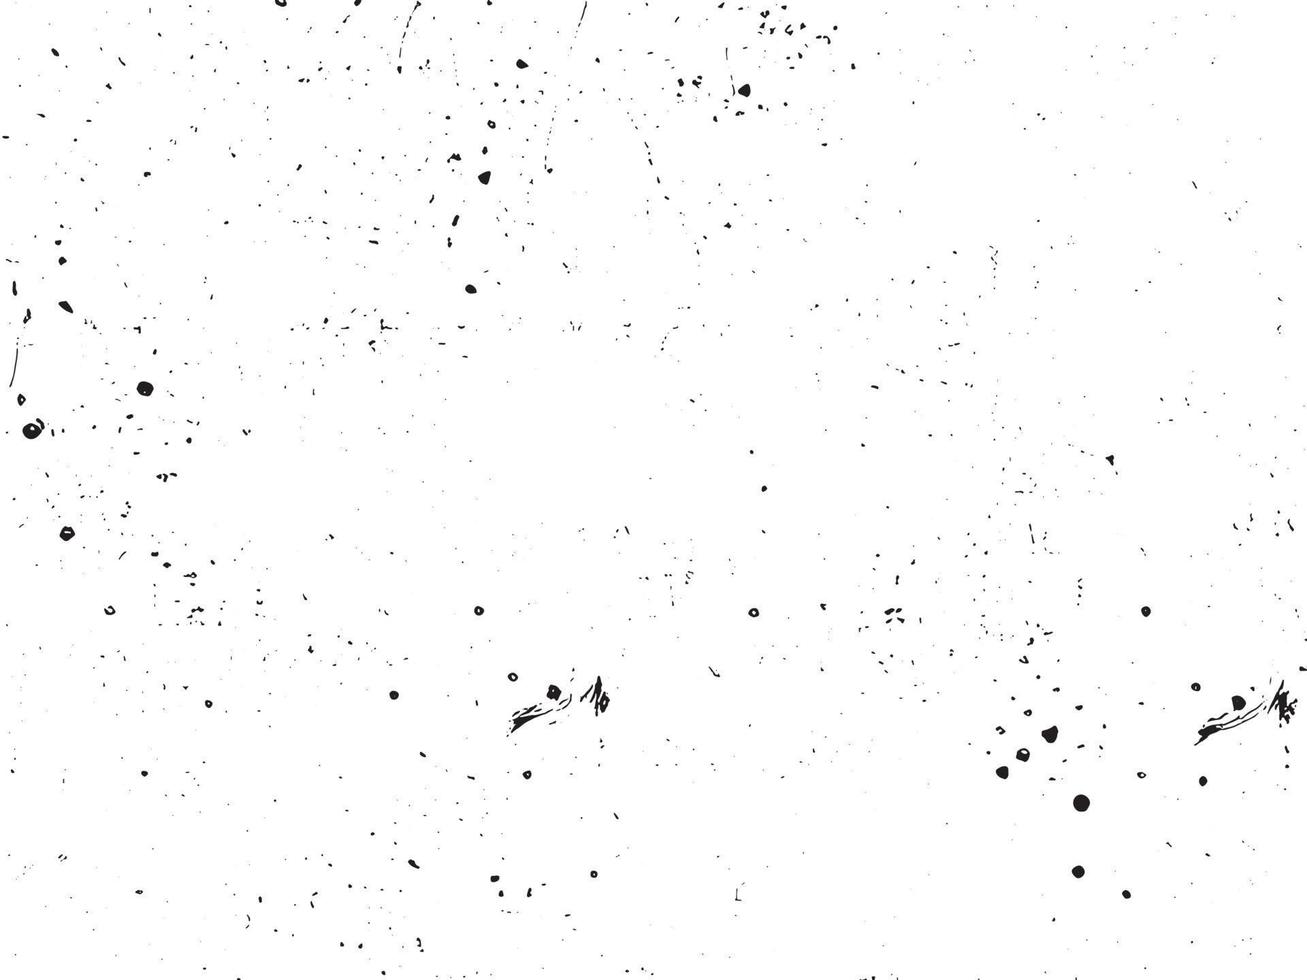 grunge achtergrond vector illustratie. zwart en wit rommelig structuur met krassen en stippen. verontrust bedekking effect voor retro ontwerp. abstract vuil oppervlakte met leeg ruimte. eps10.